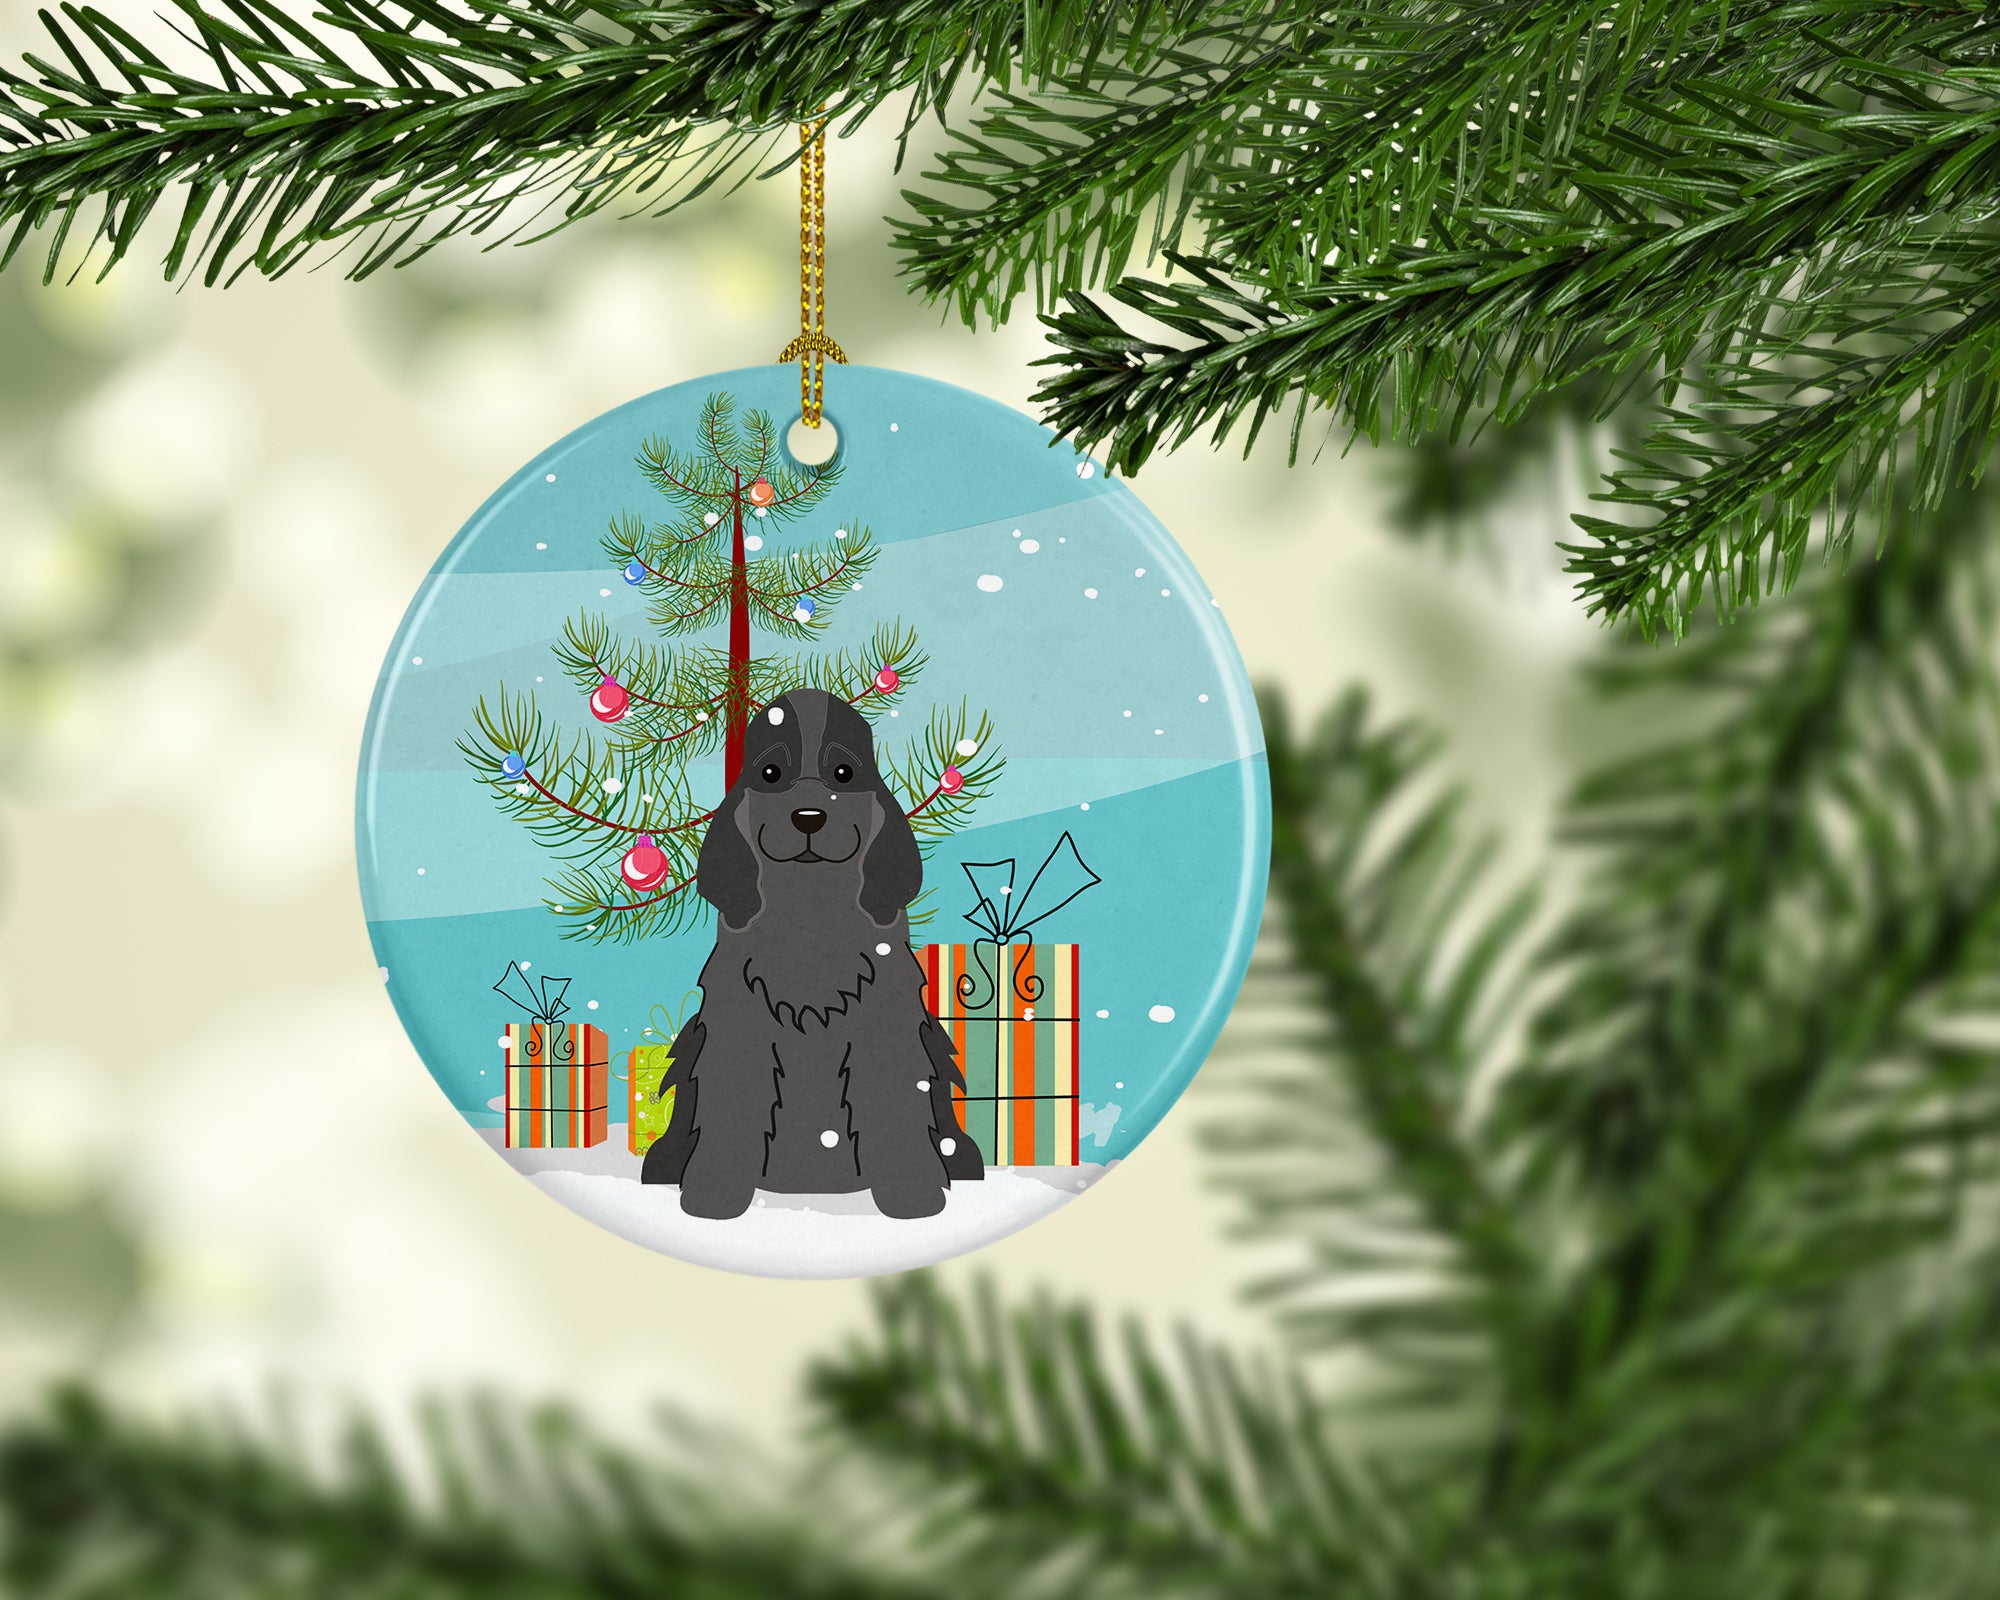 Merry Christmas Tree Cocker Spaniel Black Ceramic Ornament BB4217CO1 - the-store.com